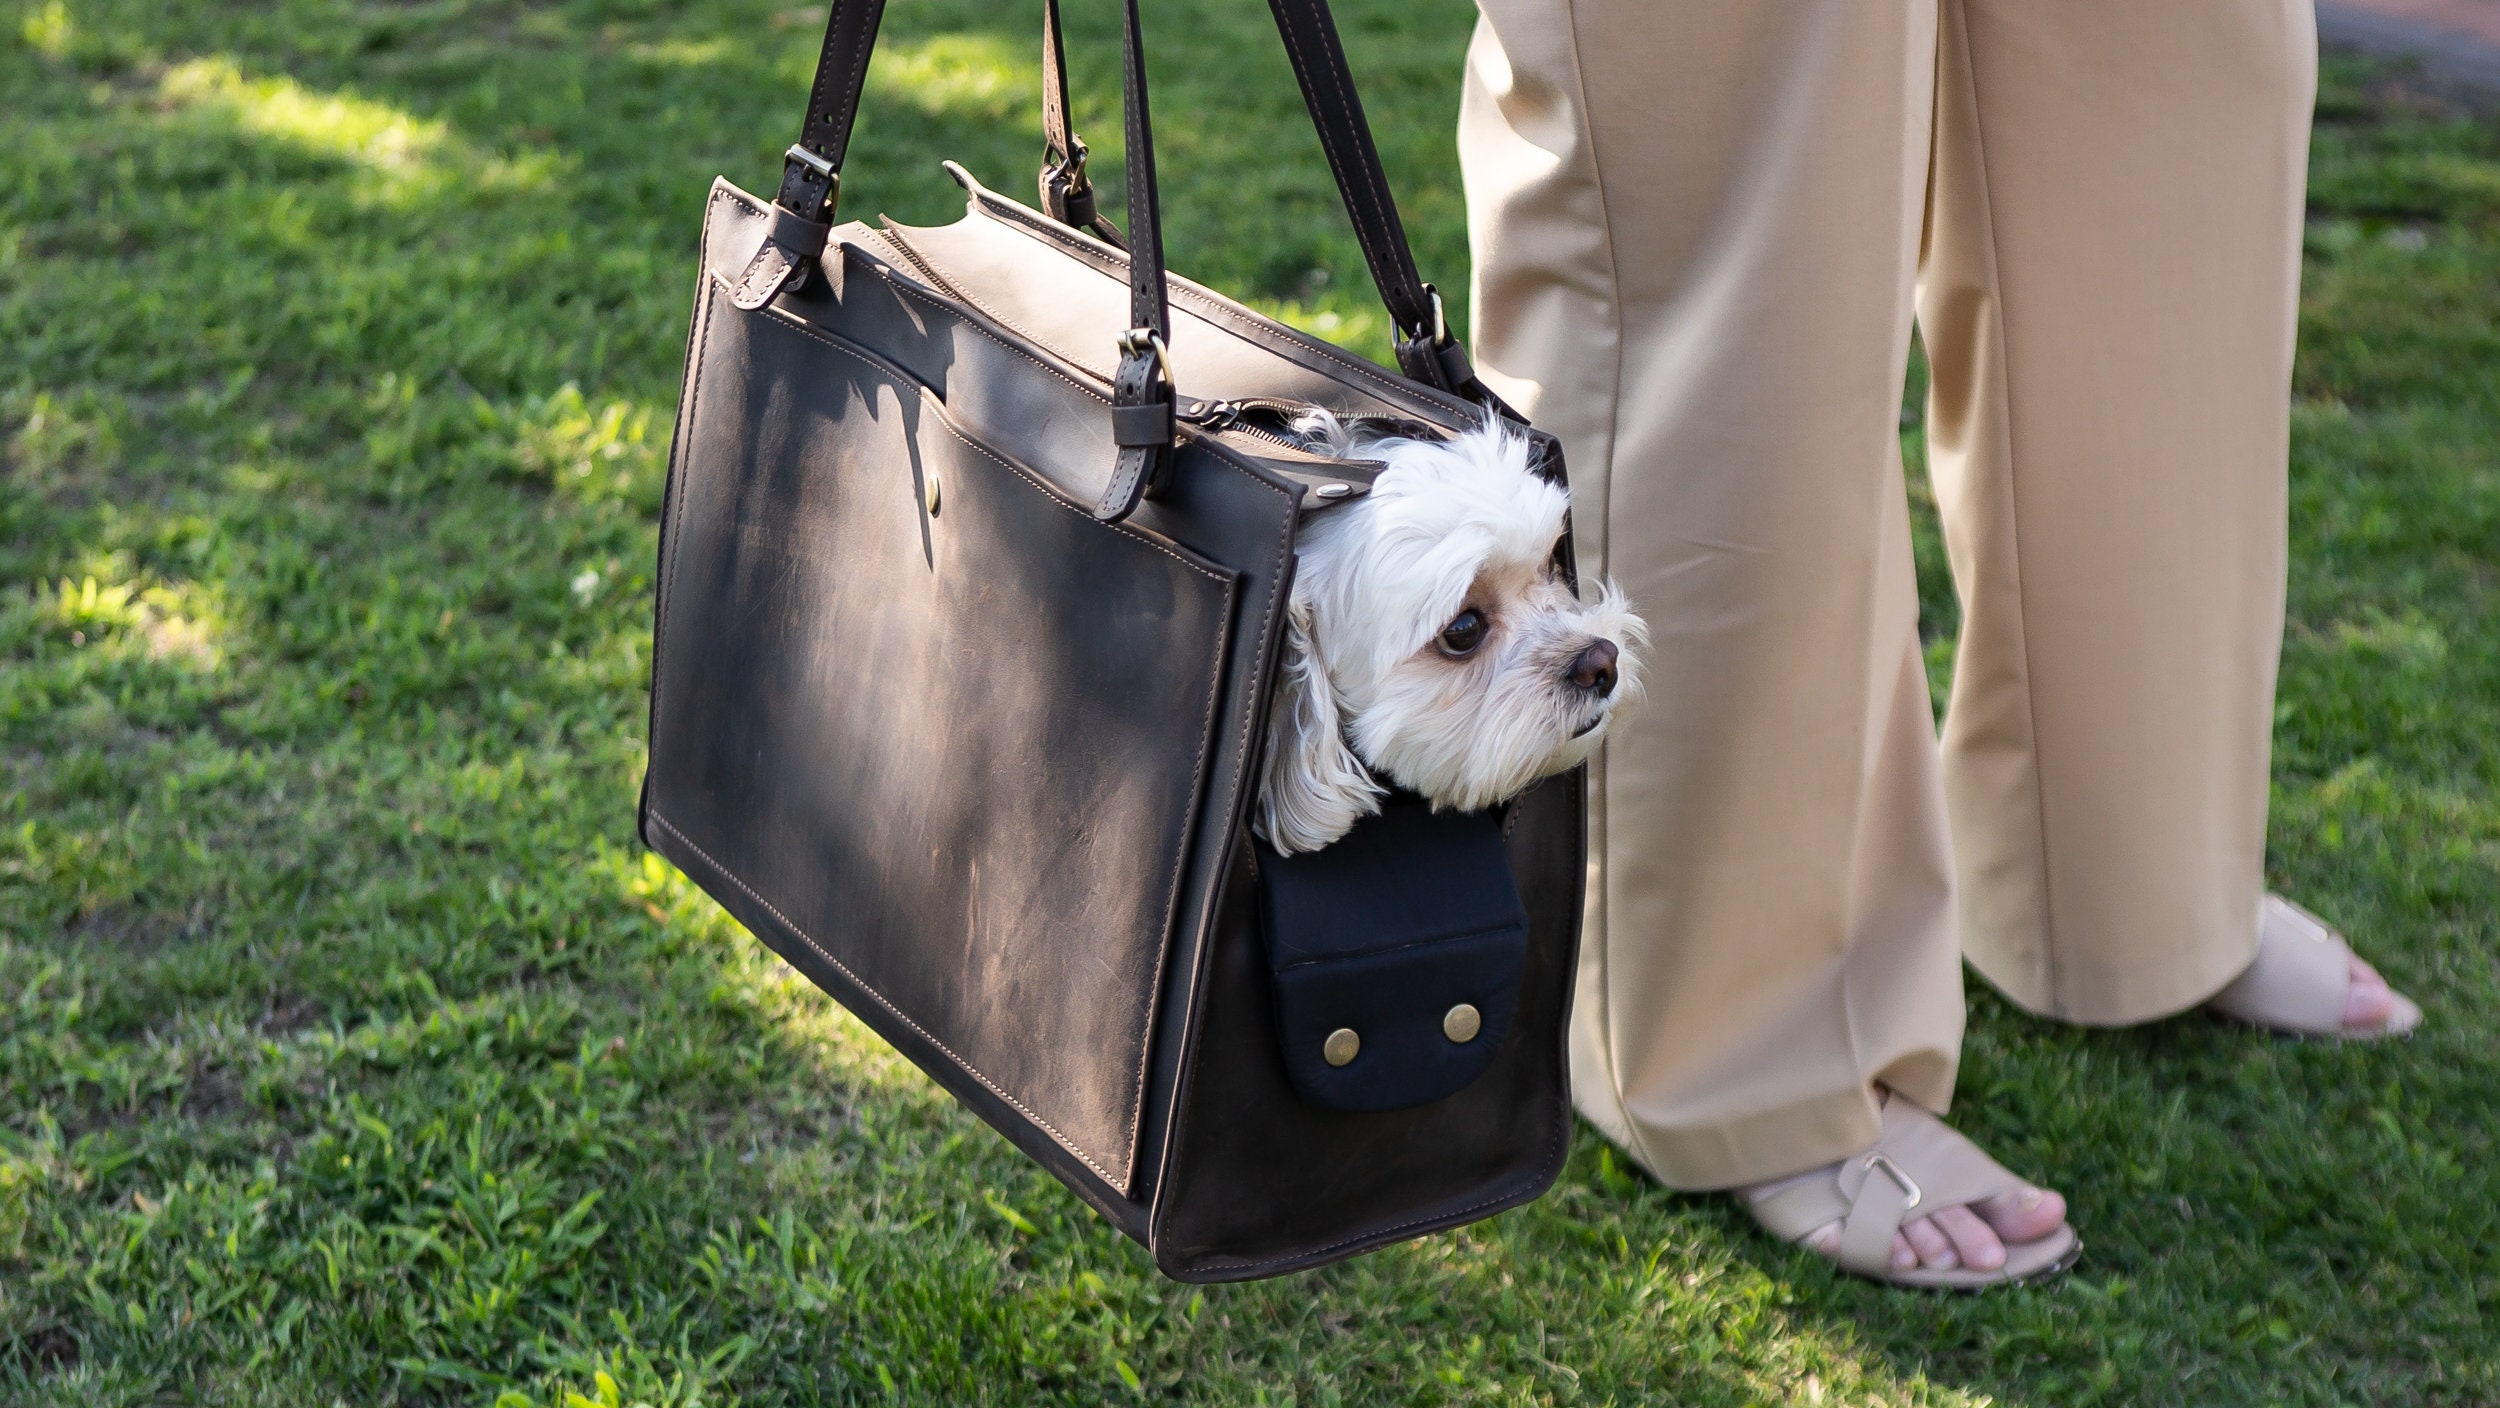 Hillwest Dog Carrier PU Leather Dog Handbag Dog Purse Cat Tote Bag Pet Cat Dog Hiking Bag Travel Bag (M, Pink)